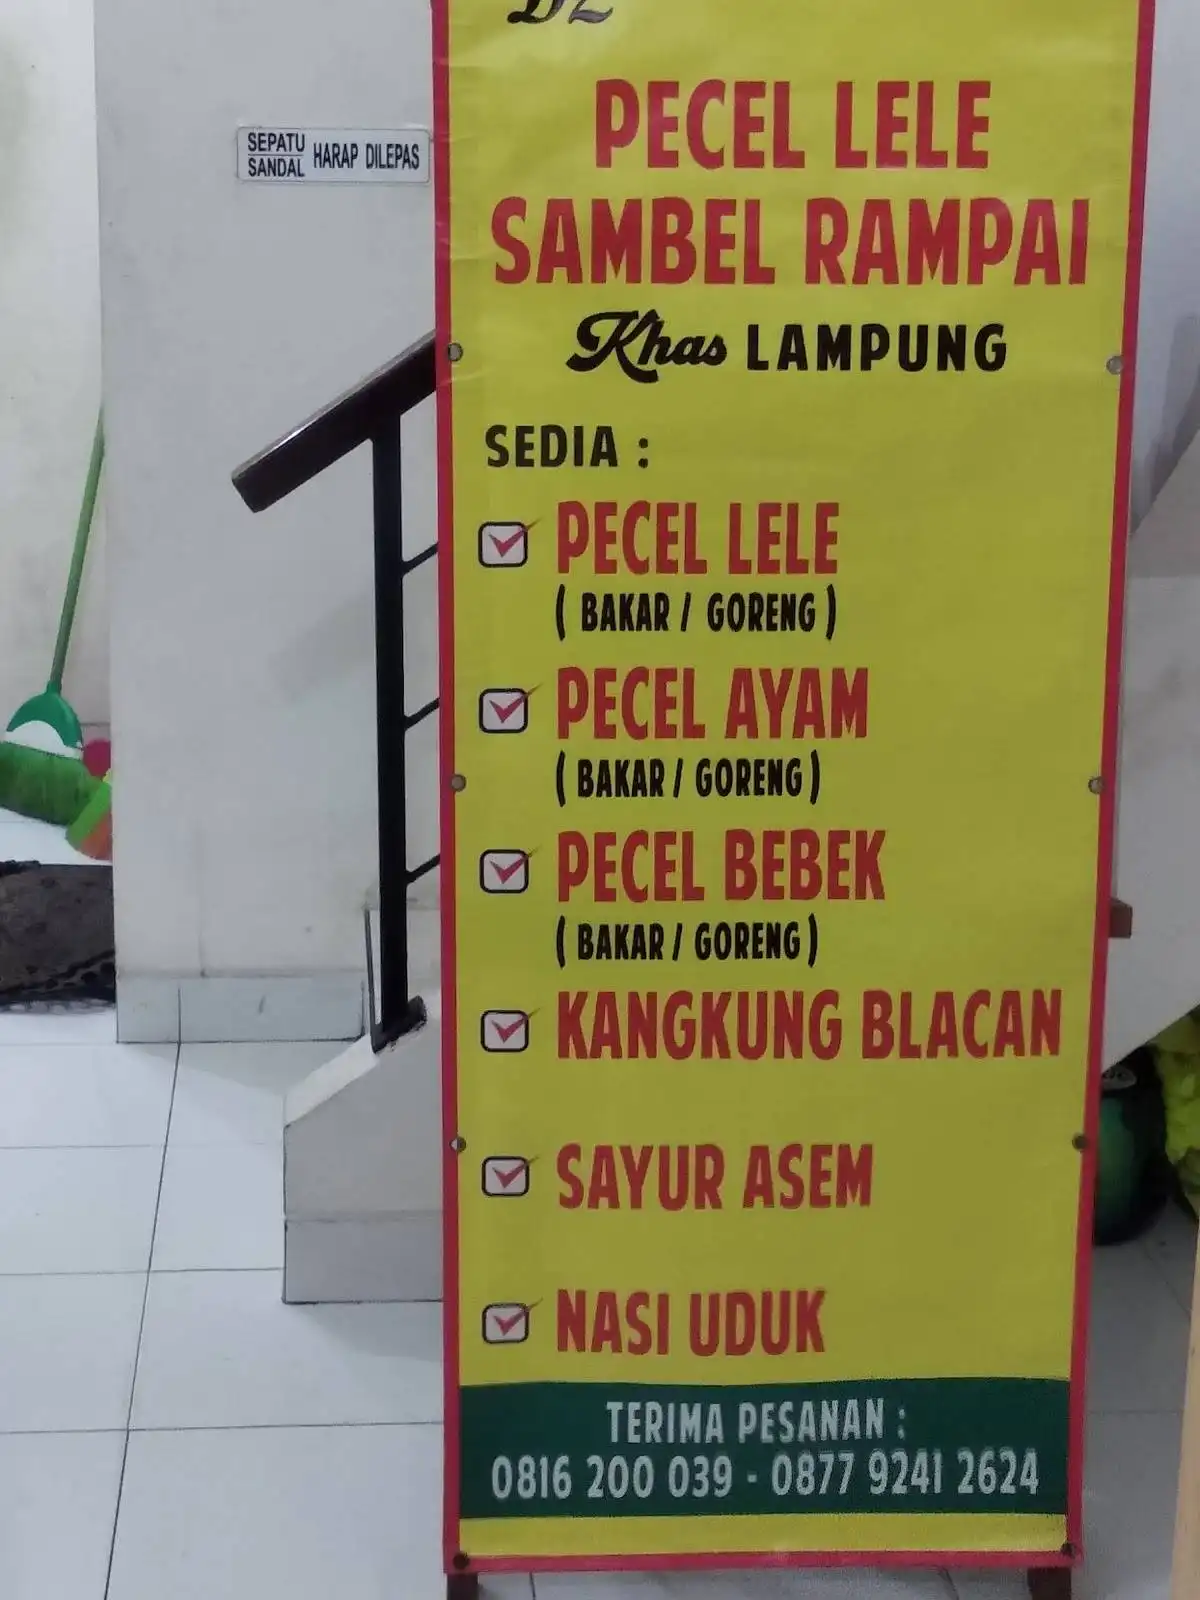 Pecel Lele Sambel Rampai Khas Lampung